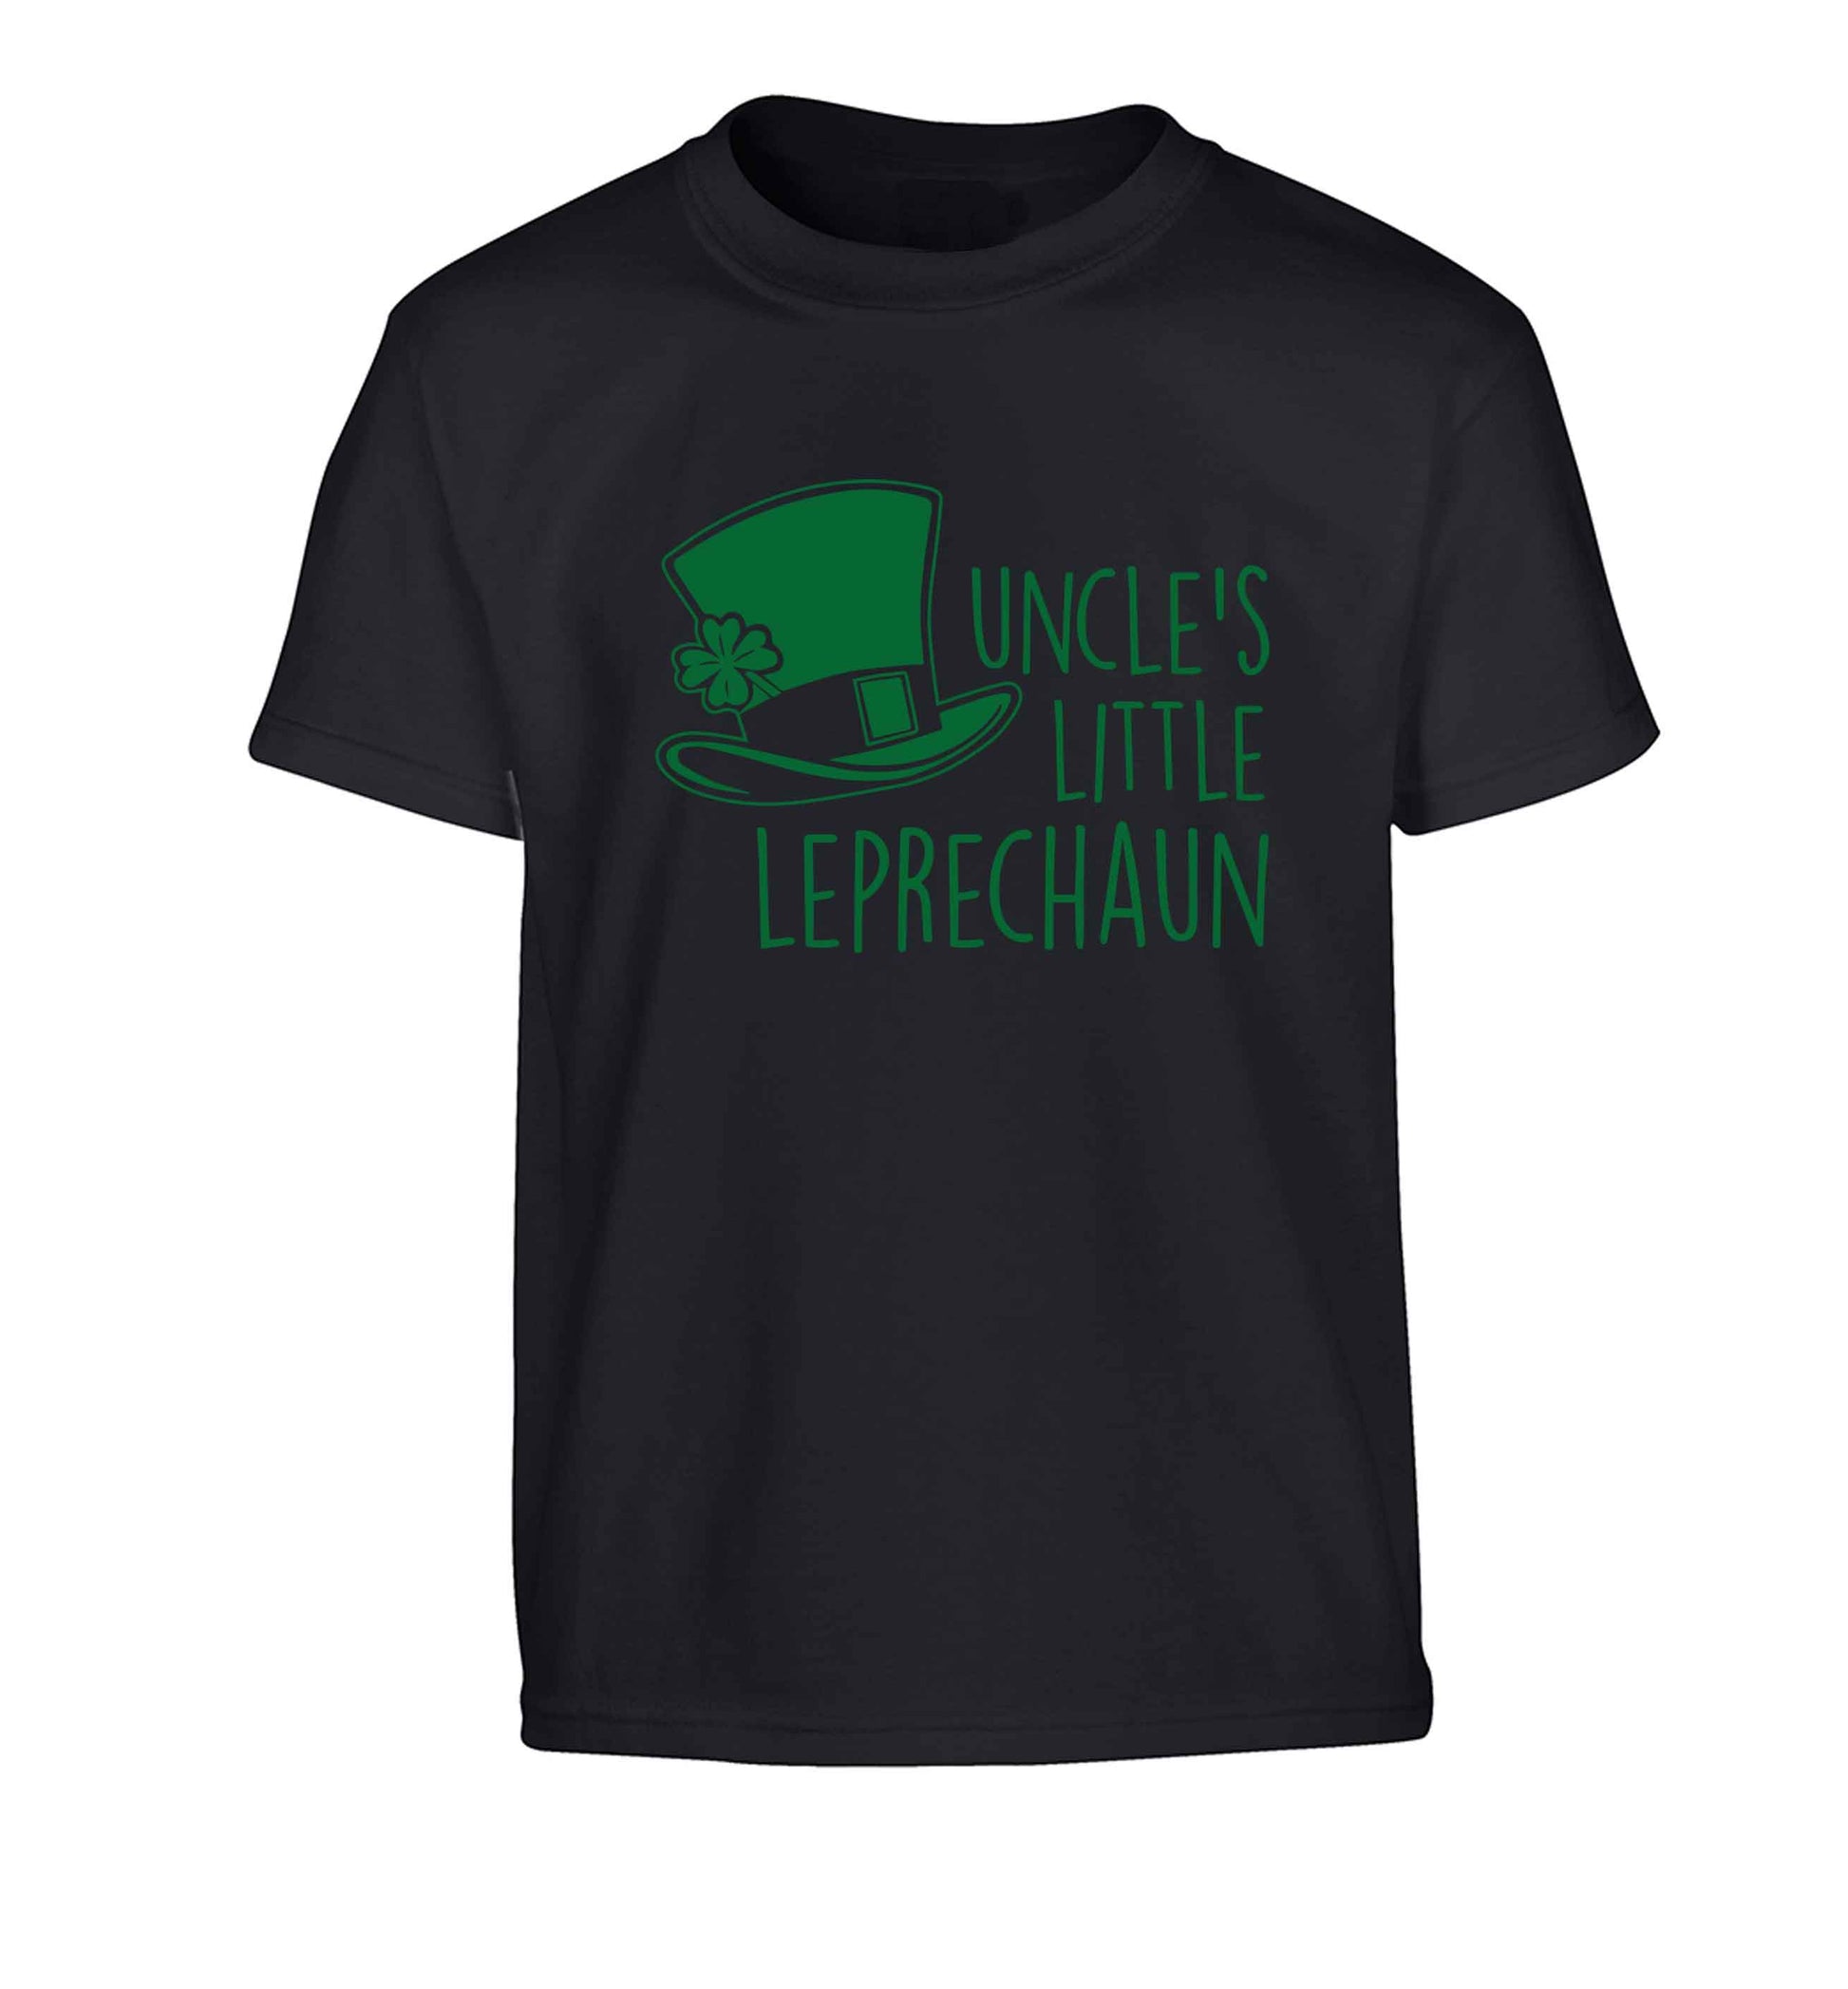 Uncles little leprechaun Children's black Tshirt 12-13 Years